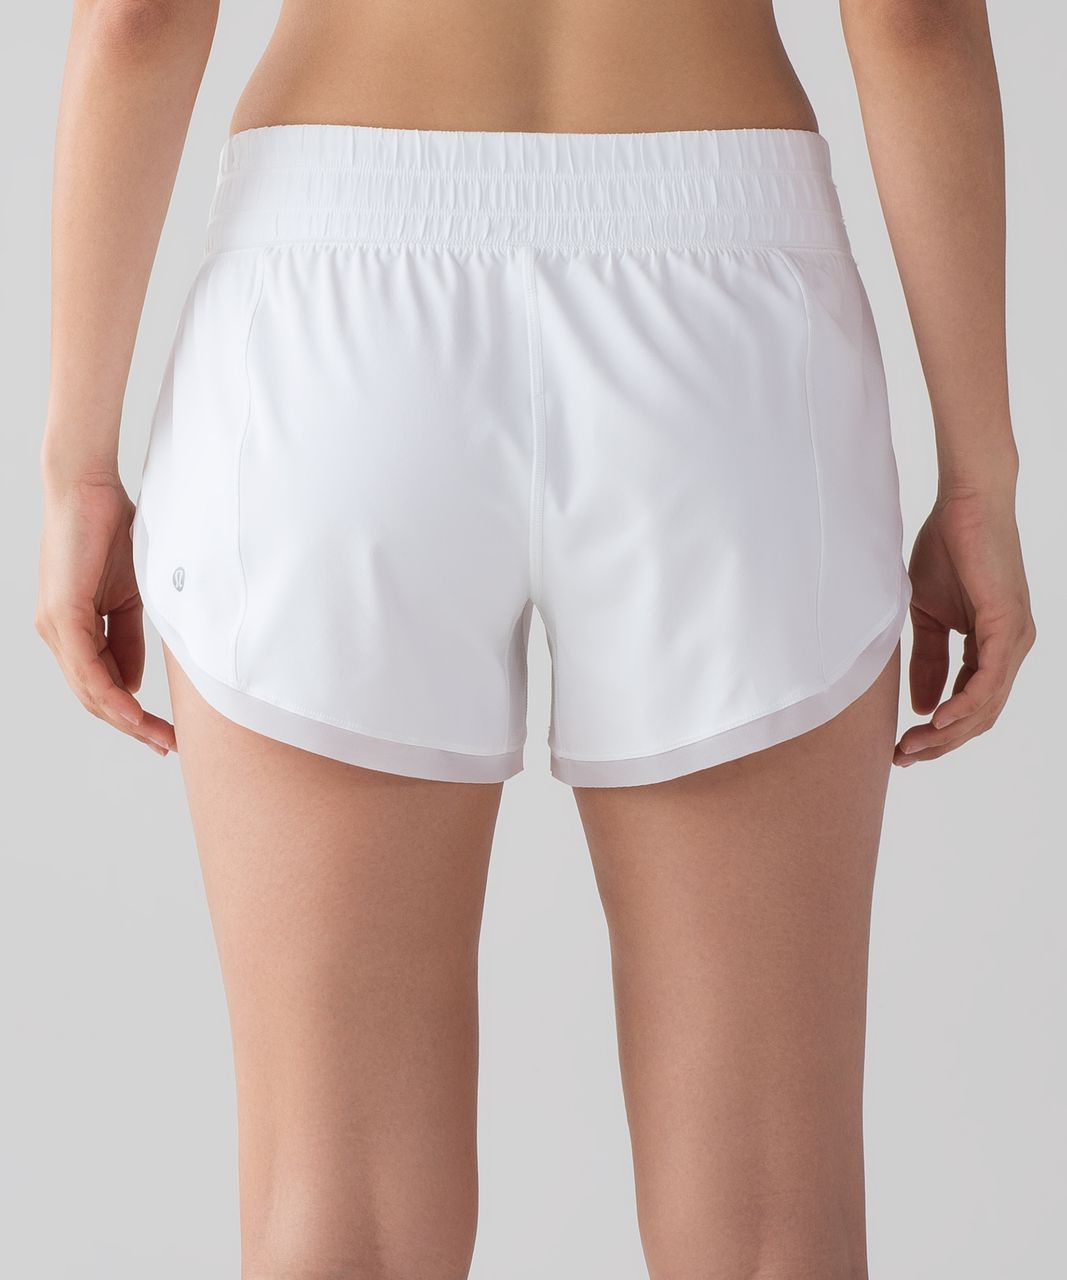 white lululemon shorts